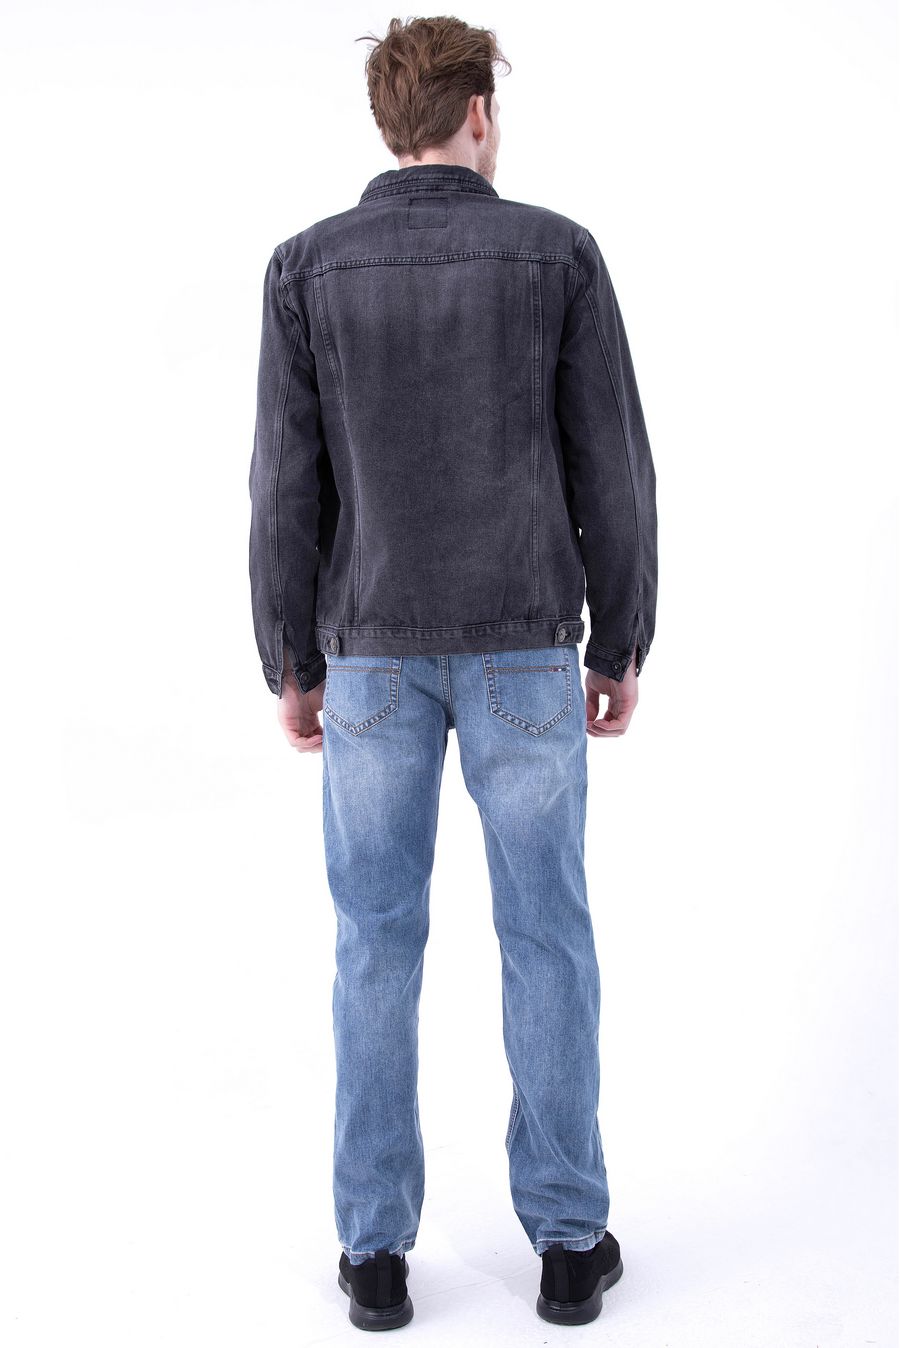 Пиджак мужской (джинсовка) Dervirga`s D1001 - фото 3